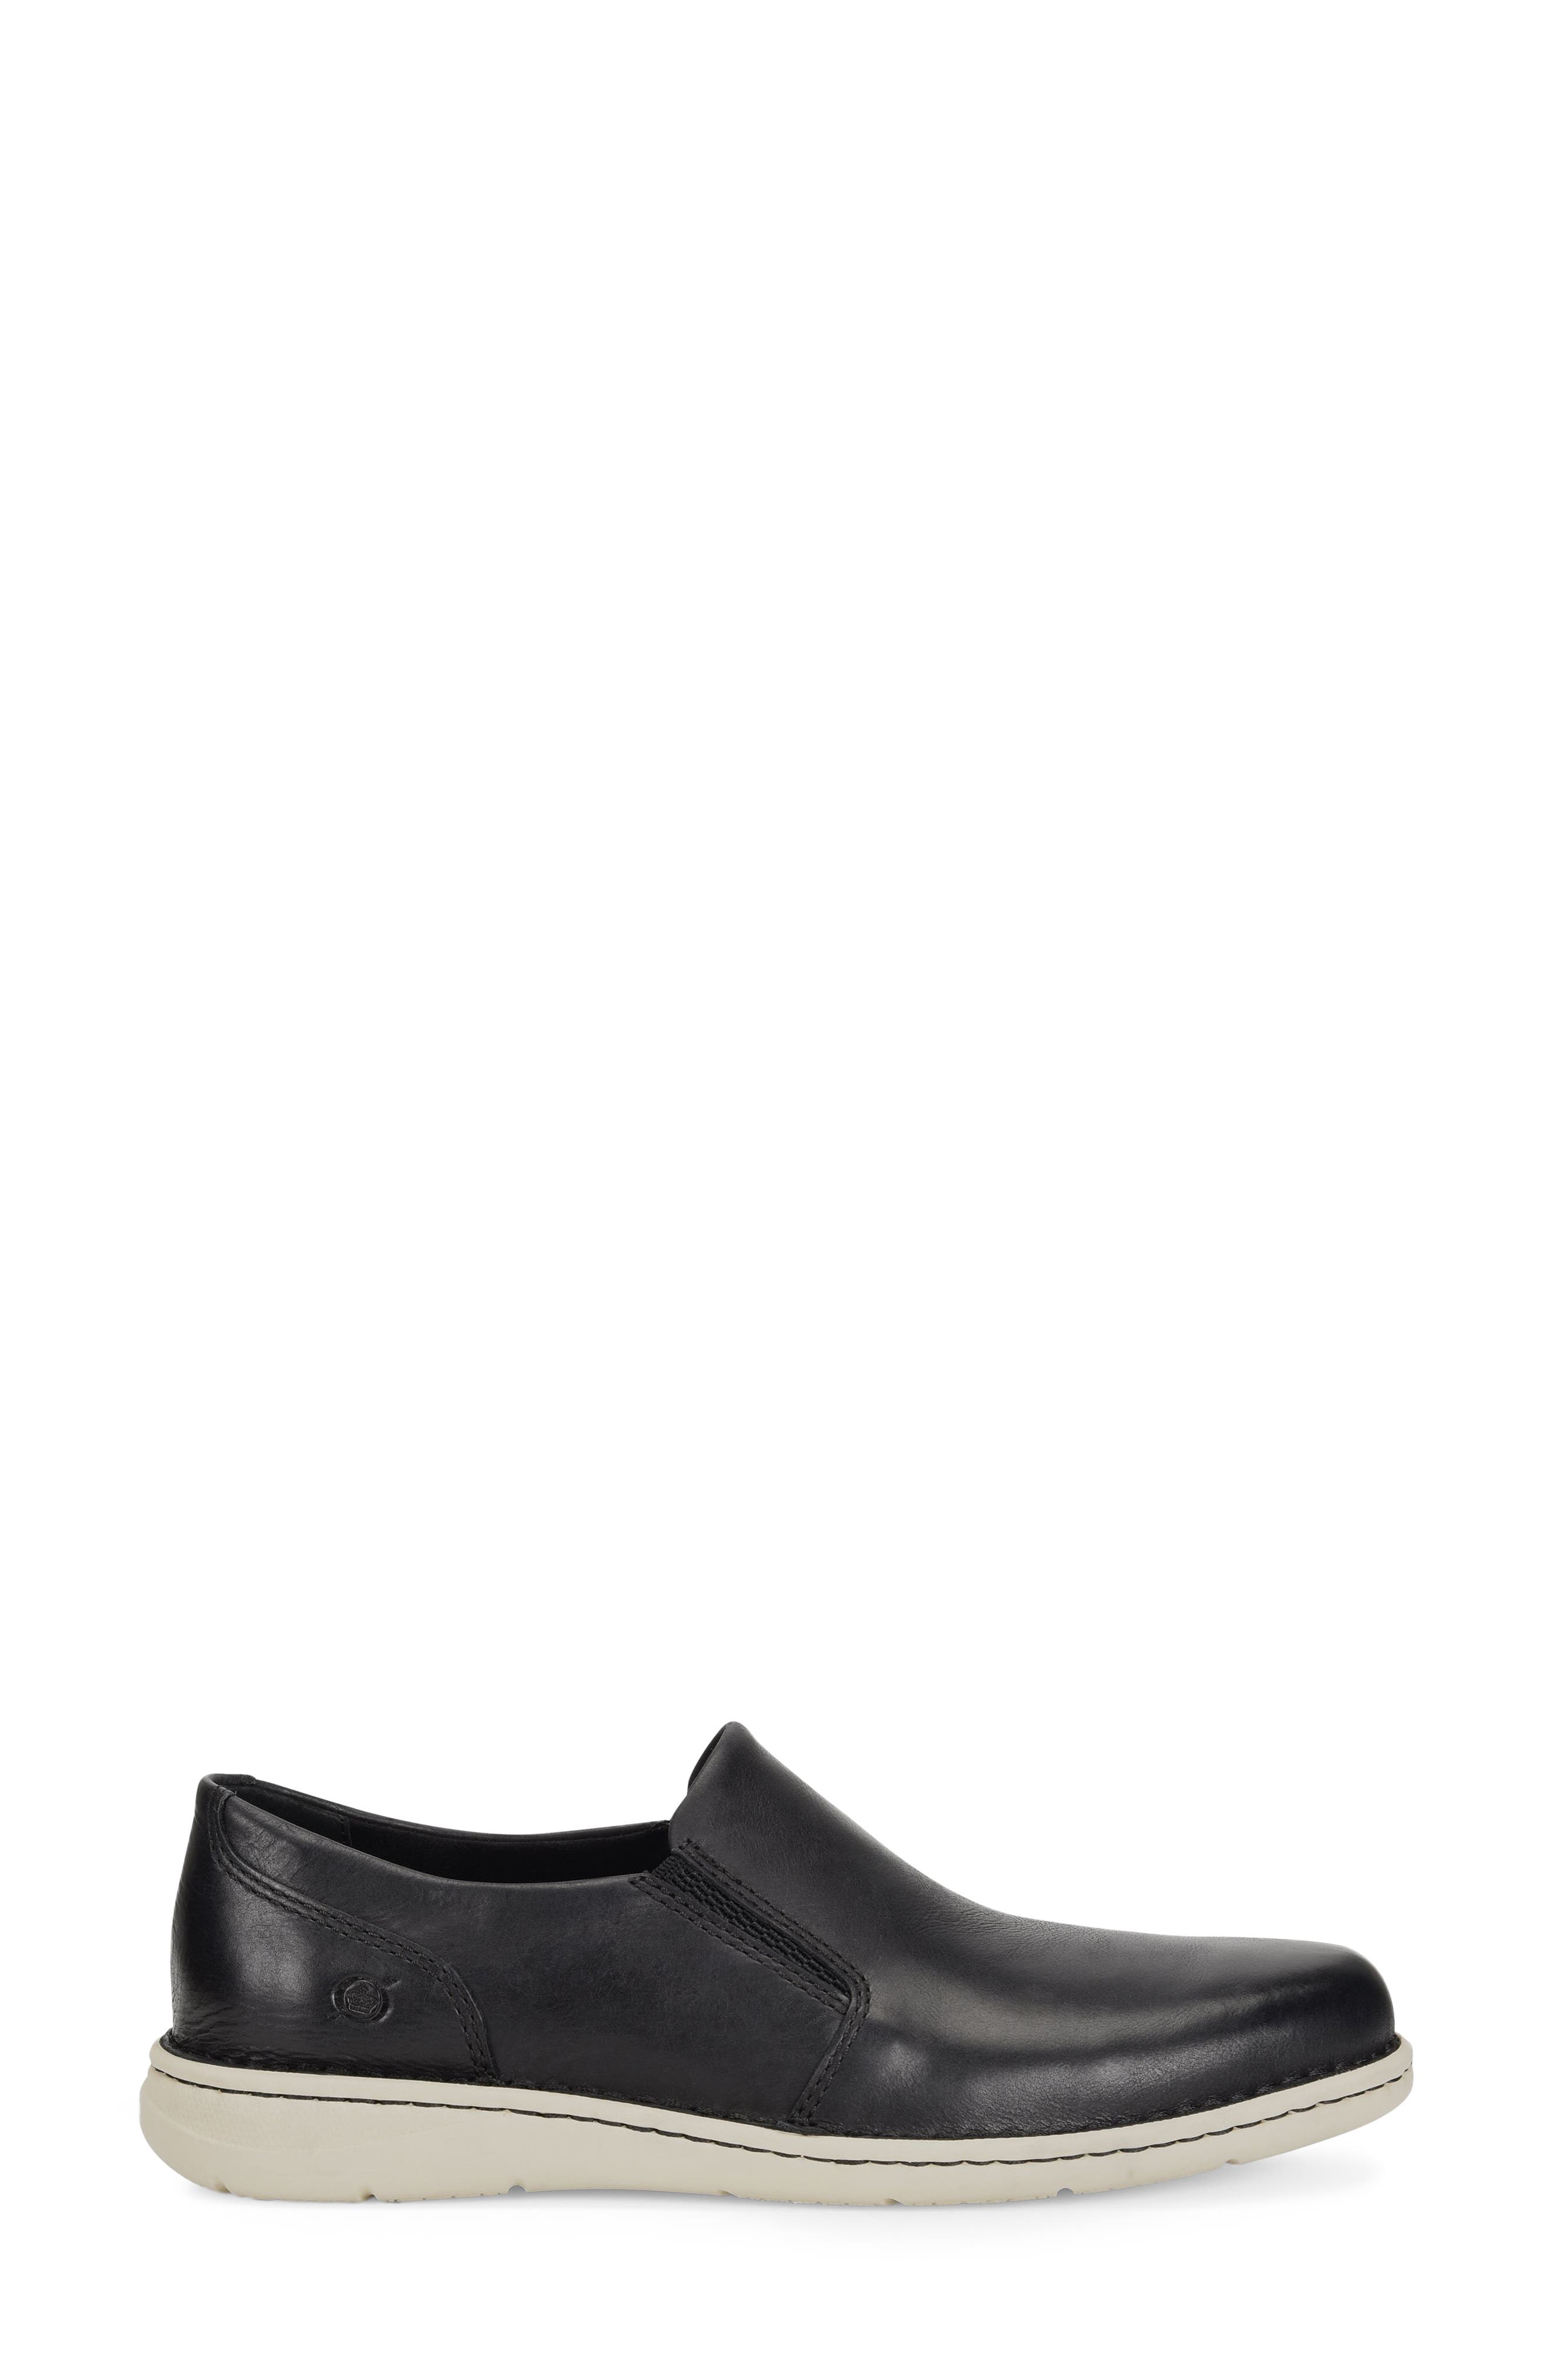 Schoenen Jongensschoenen Loafers & Instappers Boys *LIL MAN* Black Casual Square Toe Slip-On Dress Shoes 